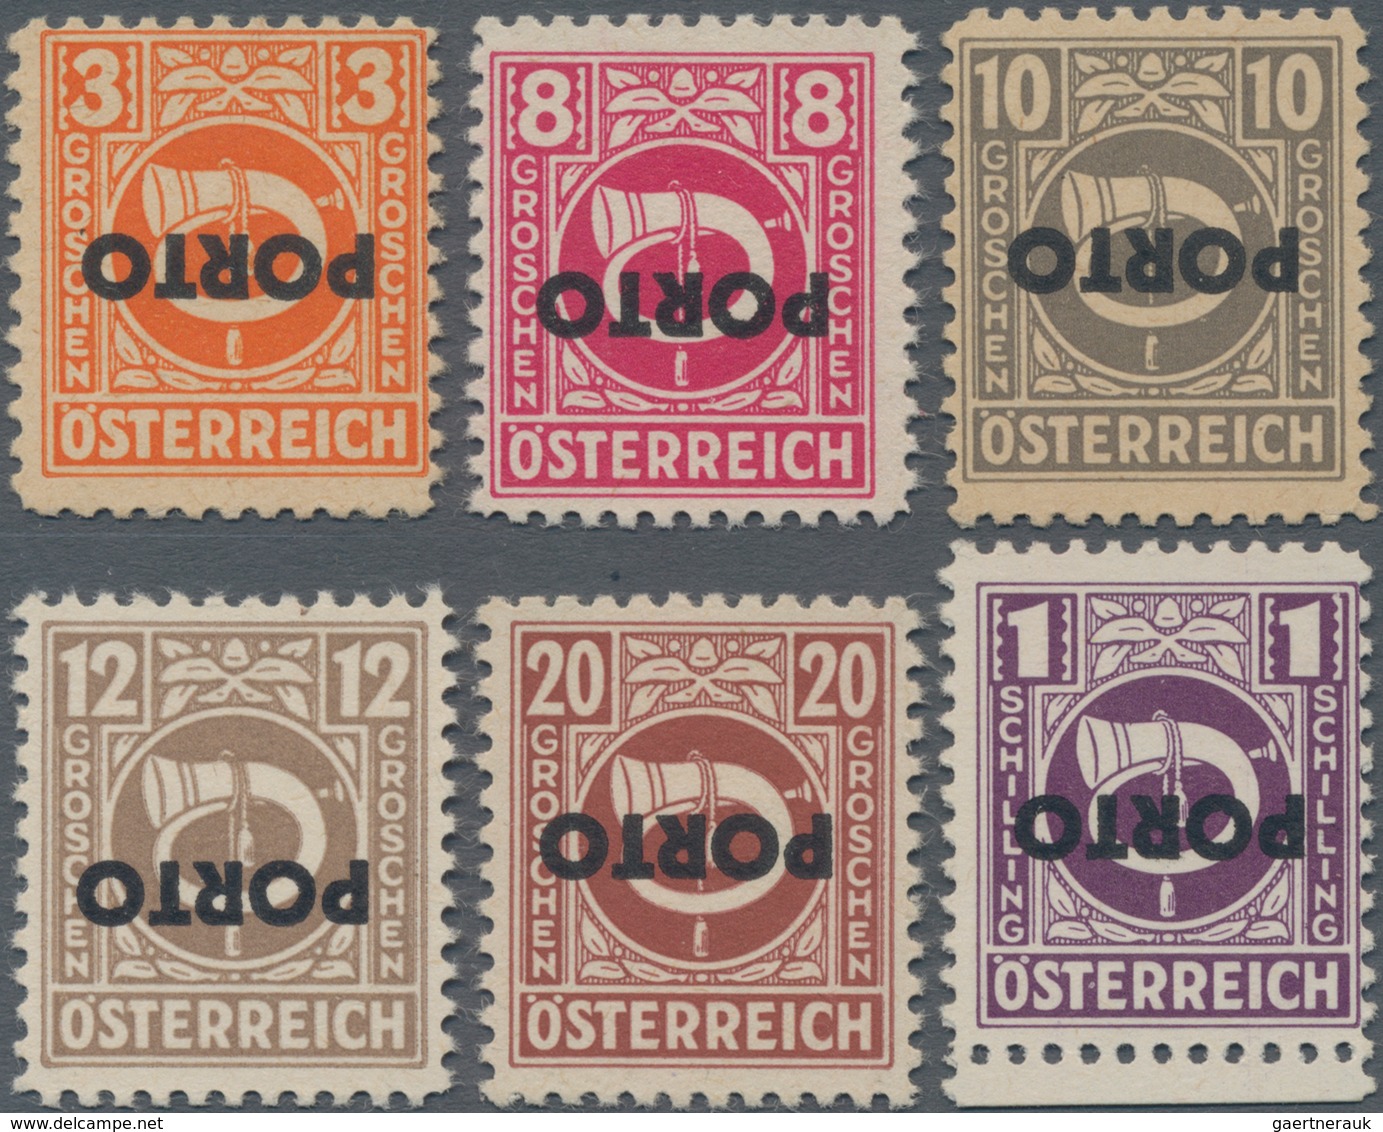 Österreich - Portomarken: 1946, 3 G, 8 G, 10 G, 12 G, 20 G Und 1 S 'Posthorn', Sechs Versch. Werte M - Portomarken